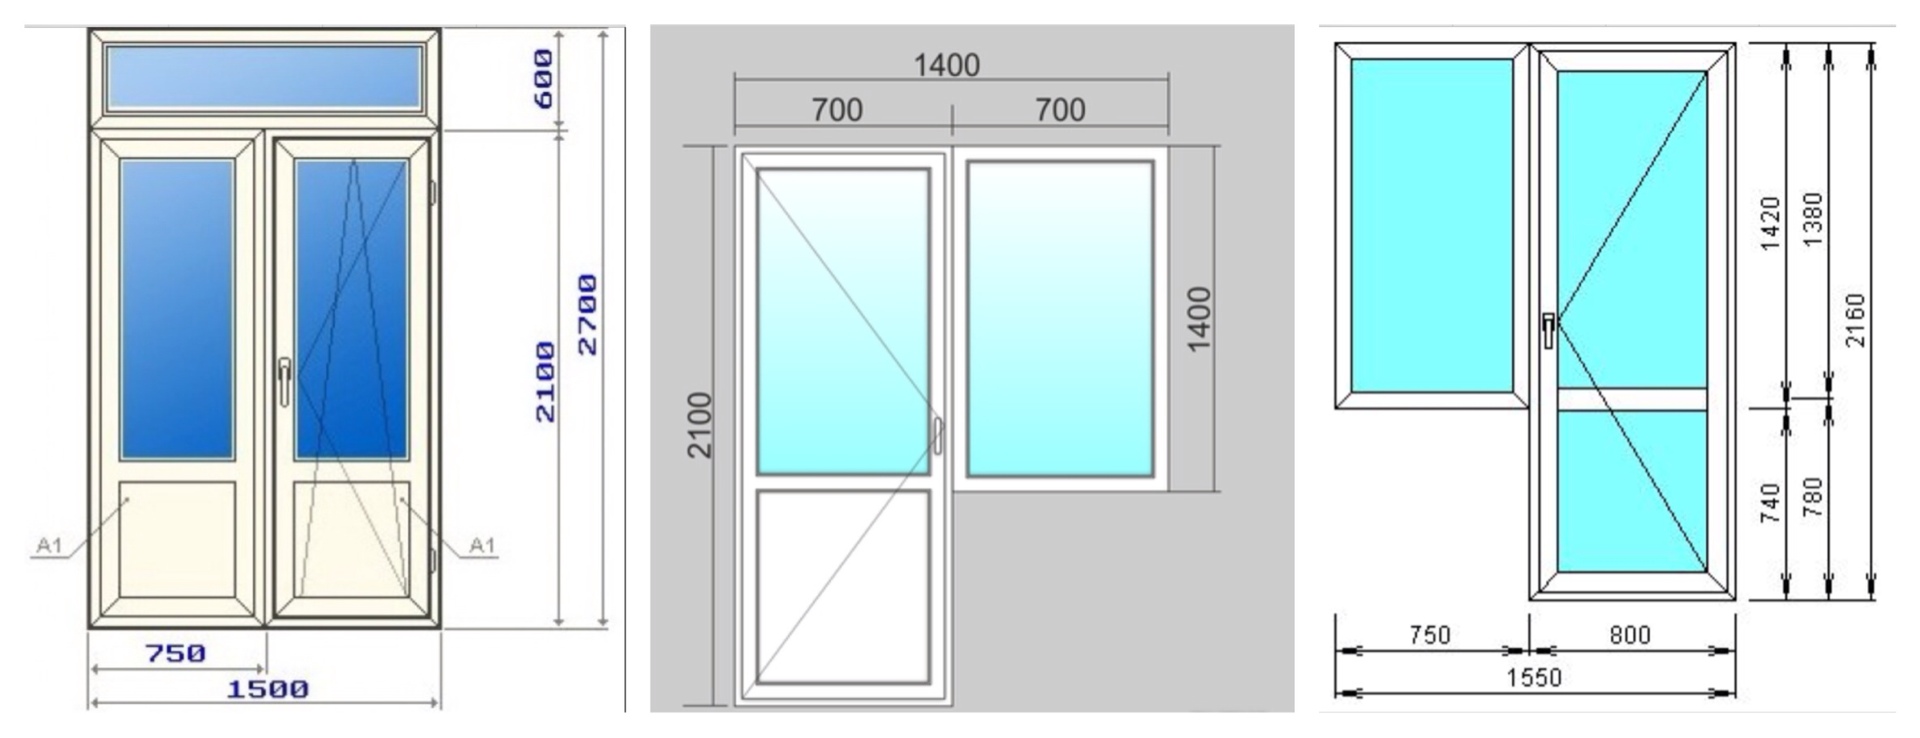 Балконный блок пластиковые окна размеры - вместе мастерим